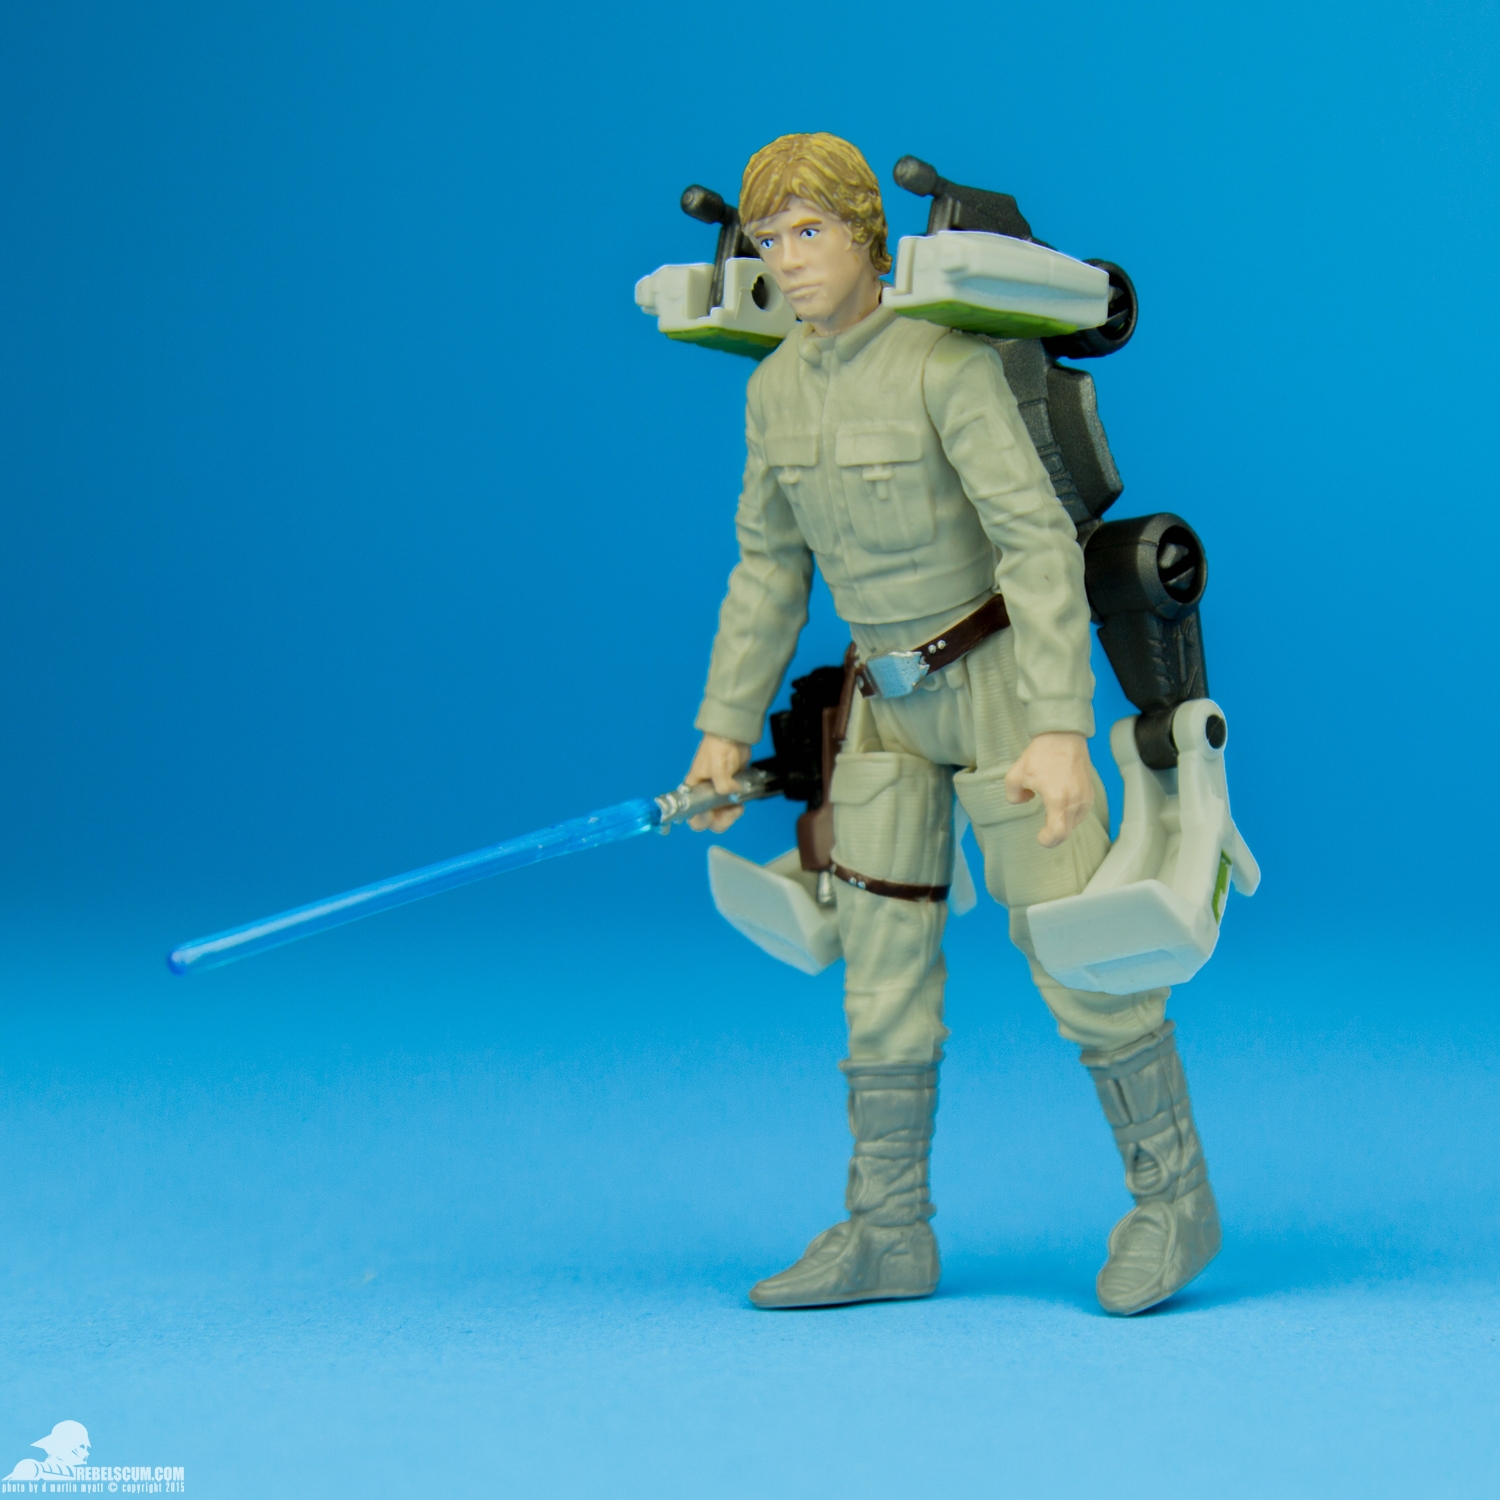 Luke-Skywalker-Star-Wars-The-Force-Awakens-Hasbro-006.jpg